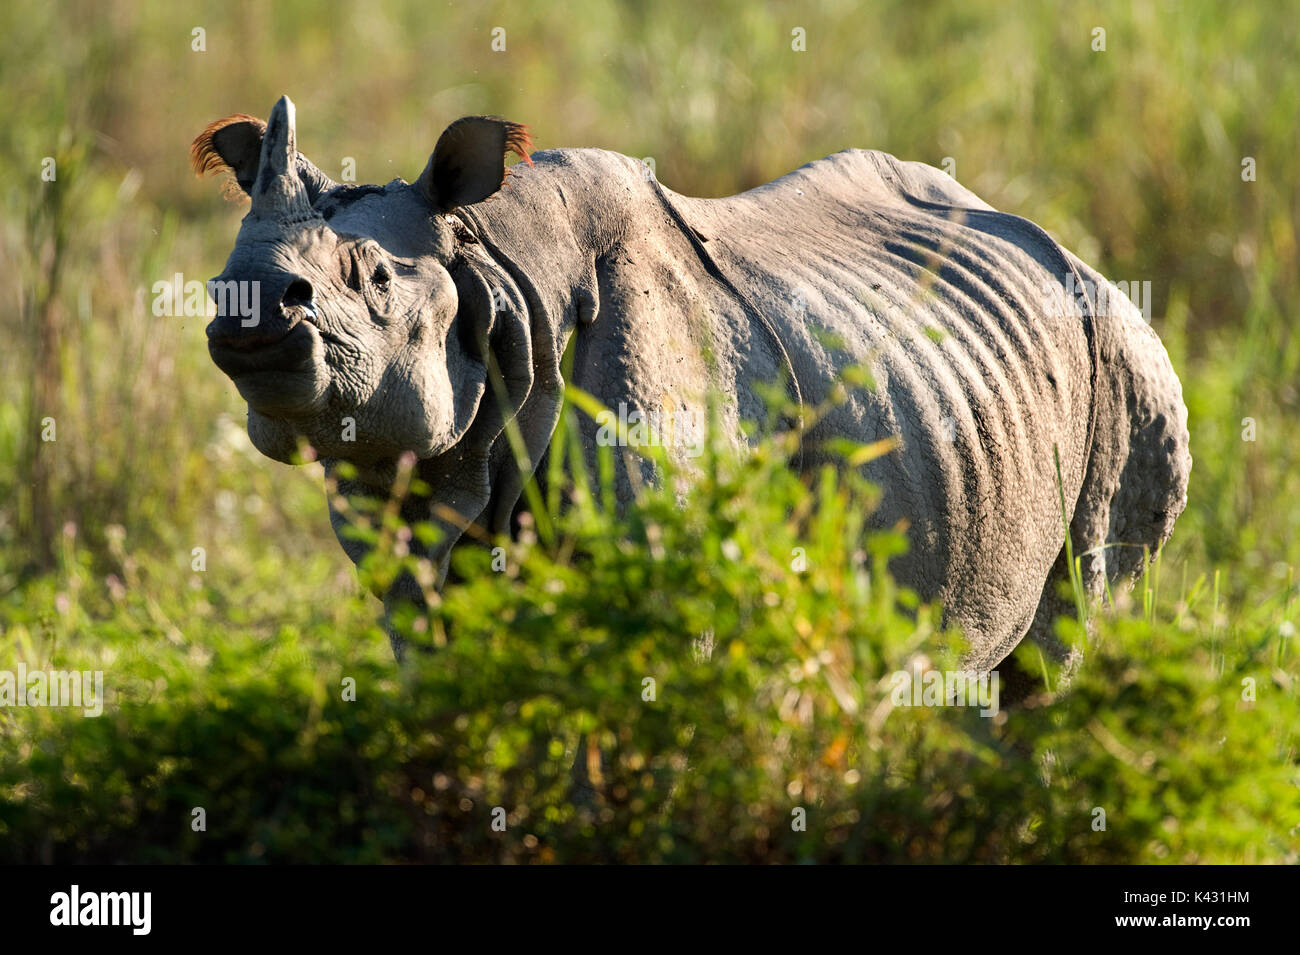 Rhinocéros indien, Rhinoceros unicornis, parc national de Kaziranga, Assam, Inde, patrimoine mondial et l'UICN UICN Catégorie II Site, 2004 en danger, vulnérable, o Banque D'Images